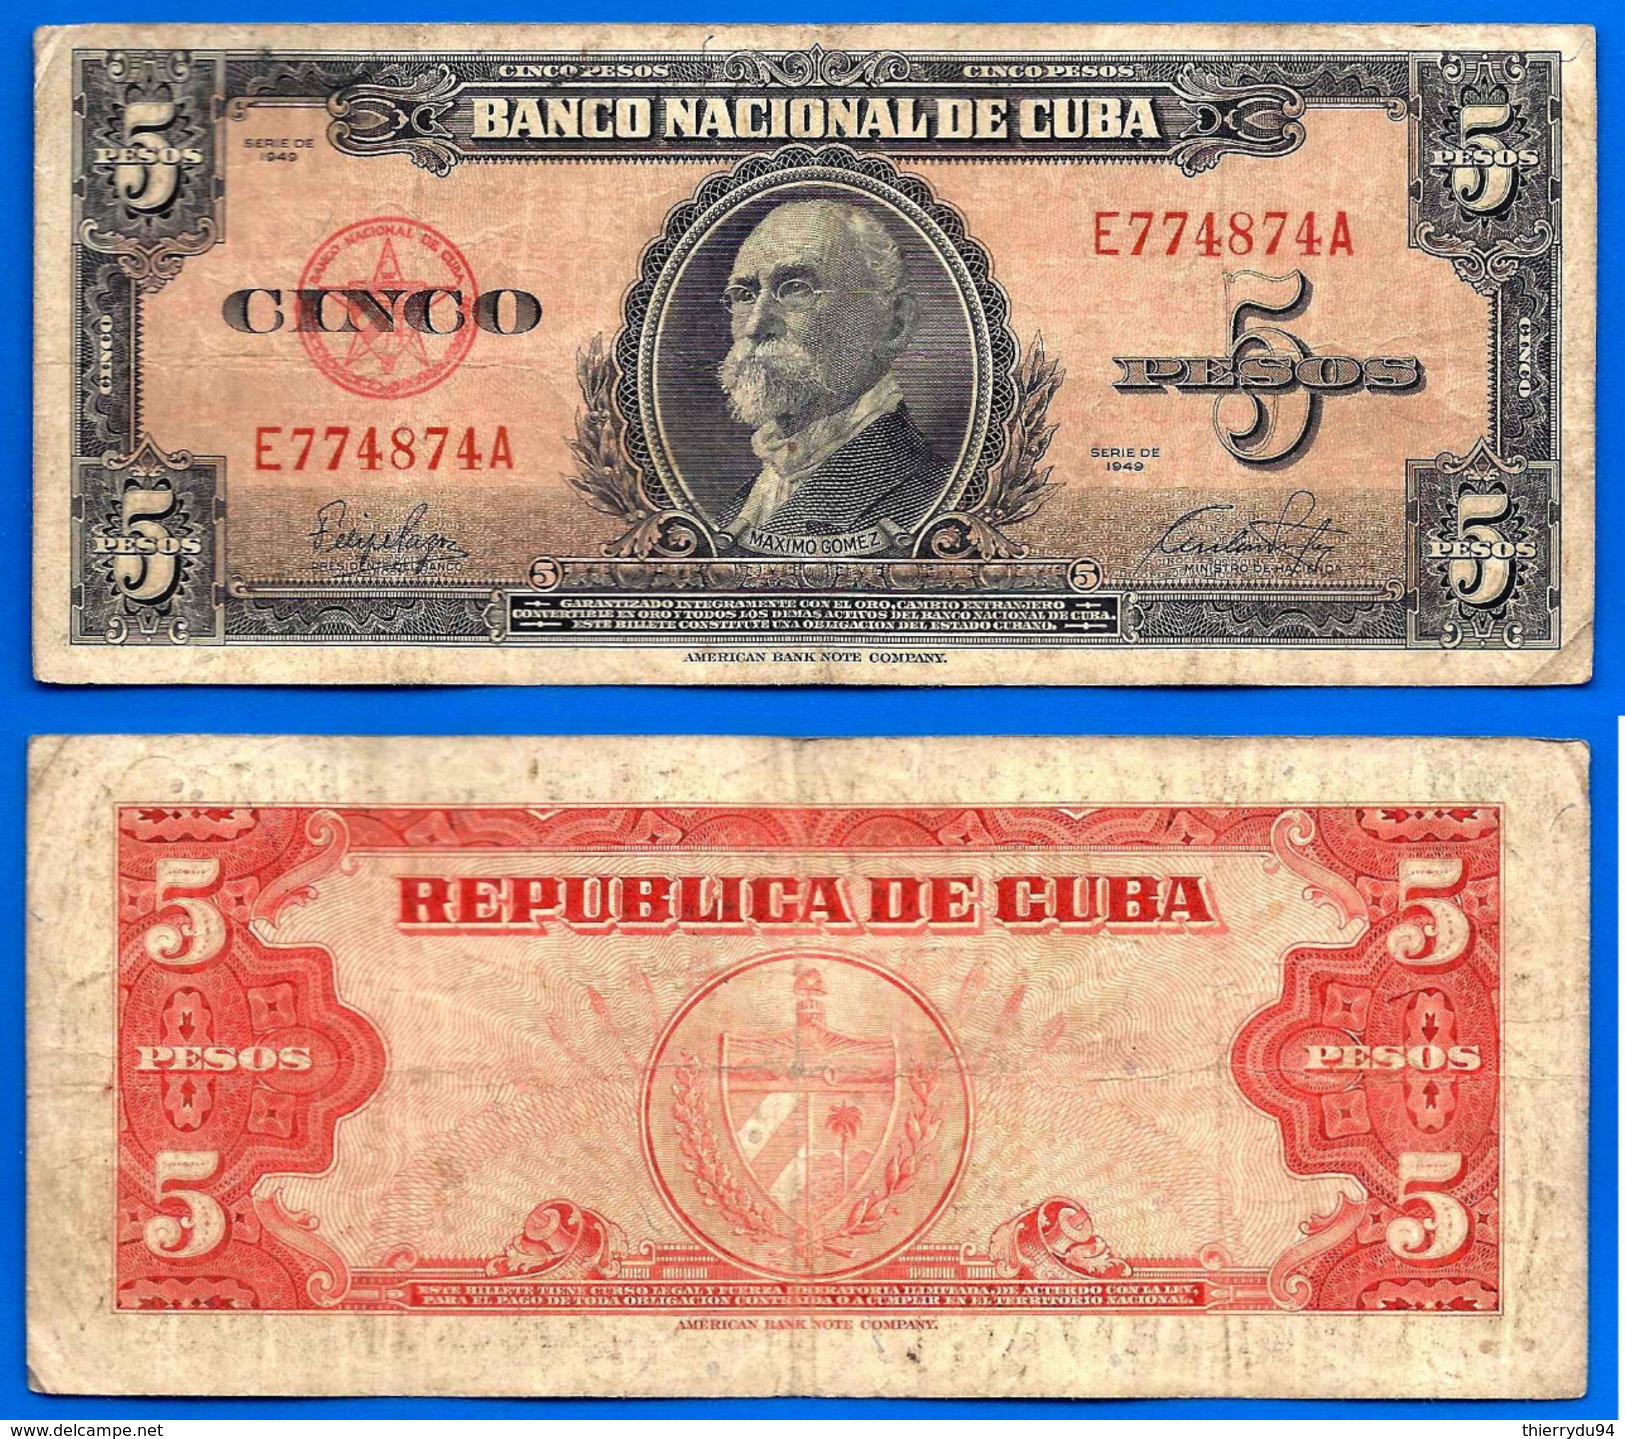 Cuba 5 Pesos 1949 Serie E Maximo Gomez Kuba Peso Centavos Centavo Caraibe Skrill Paypal Bitcoin OK! - Cuba